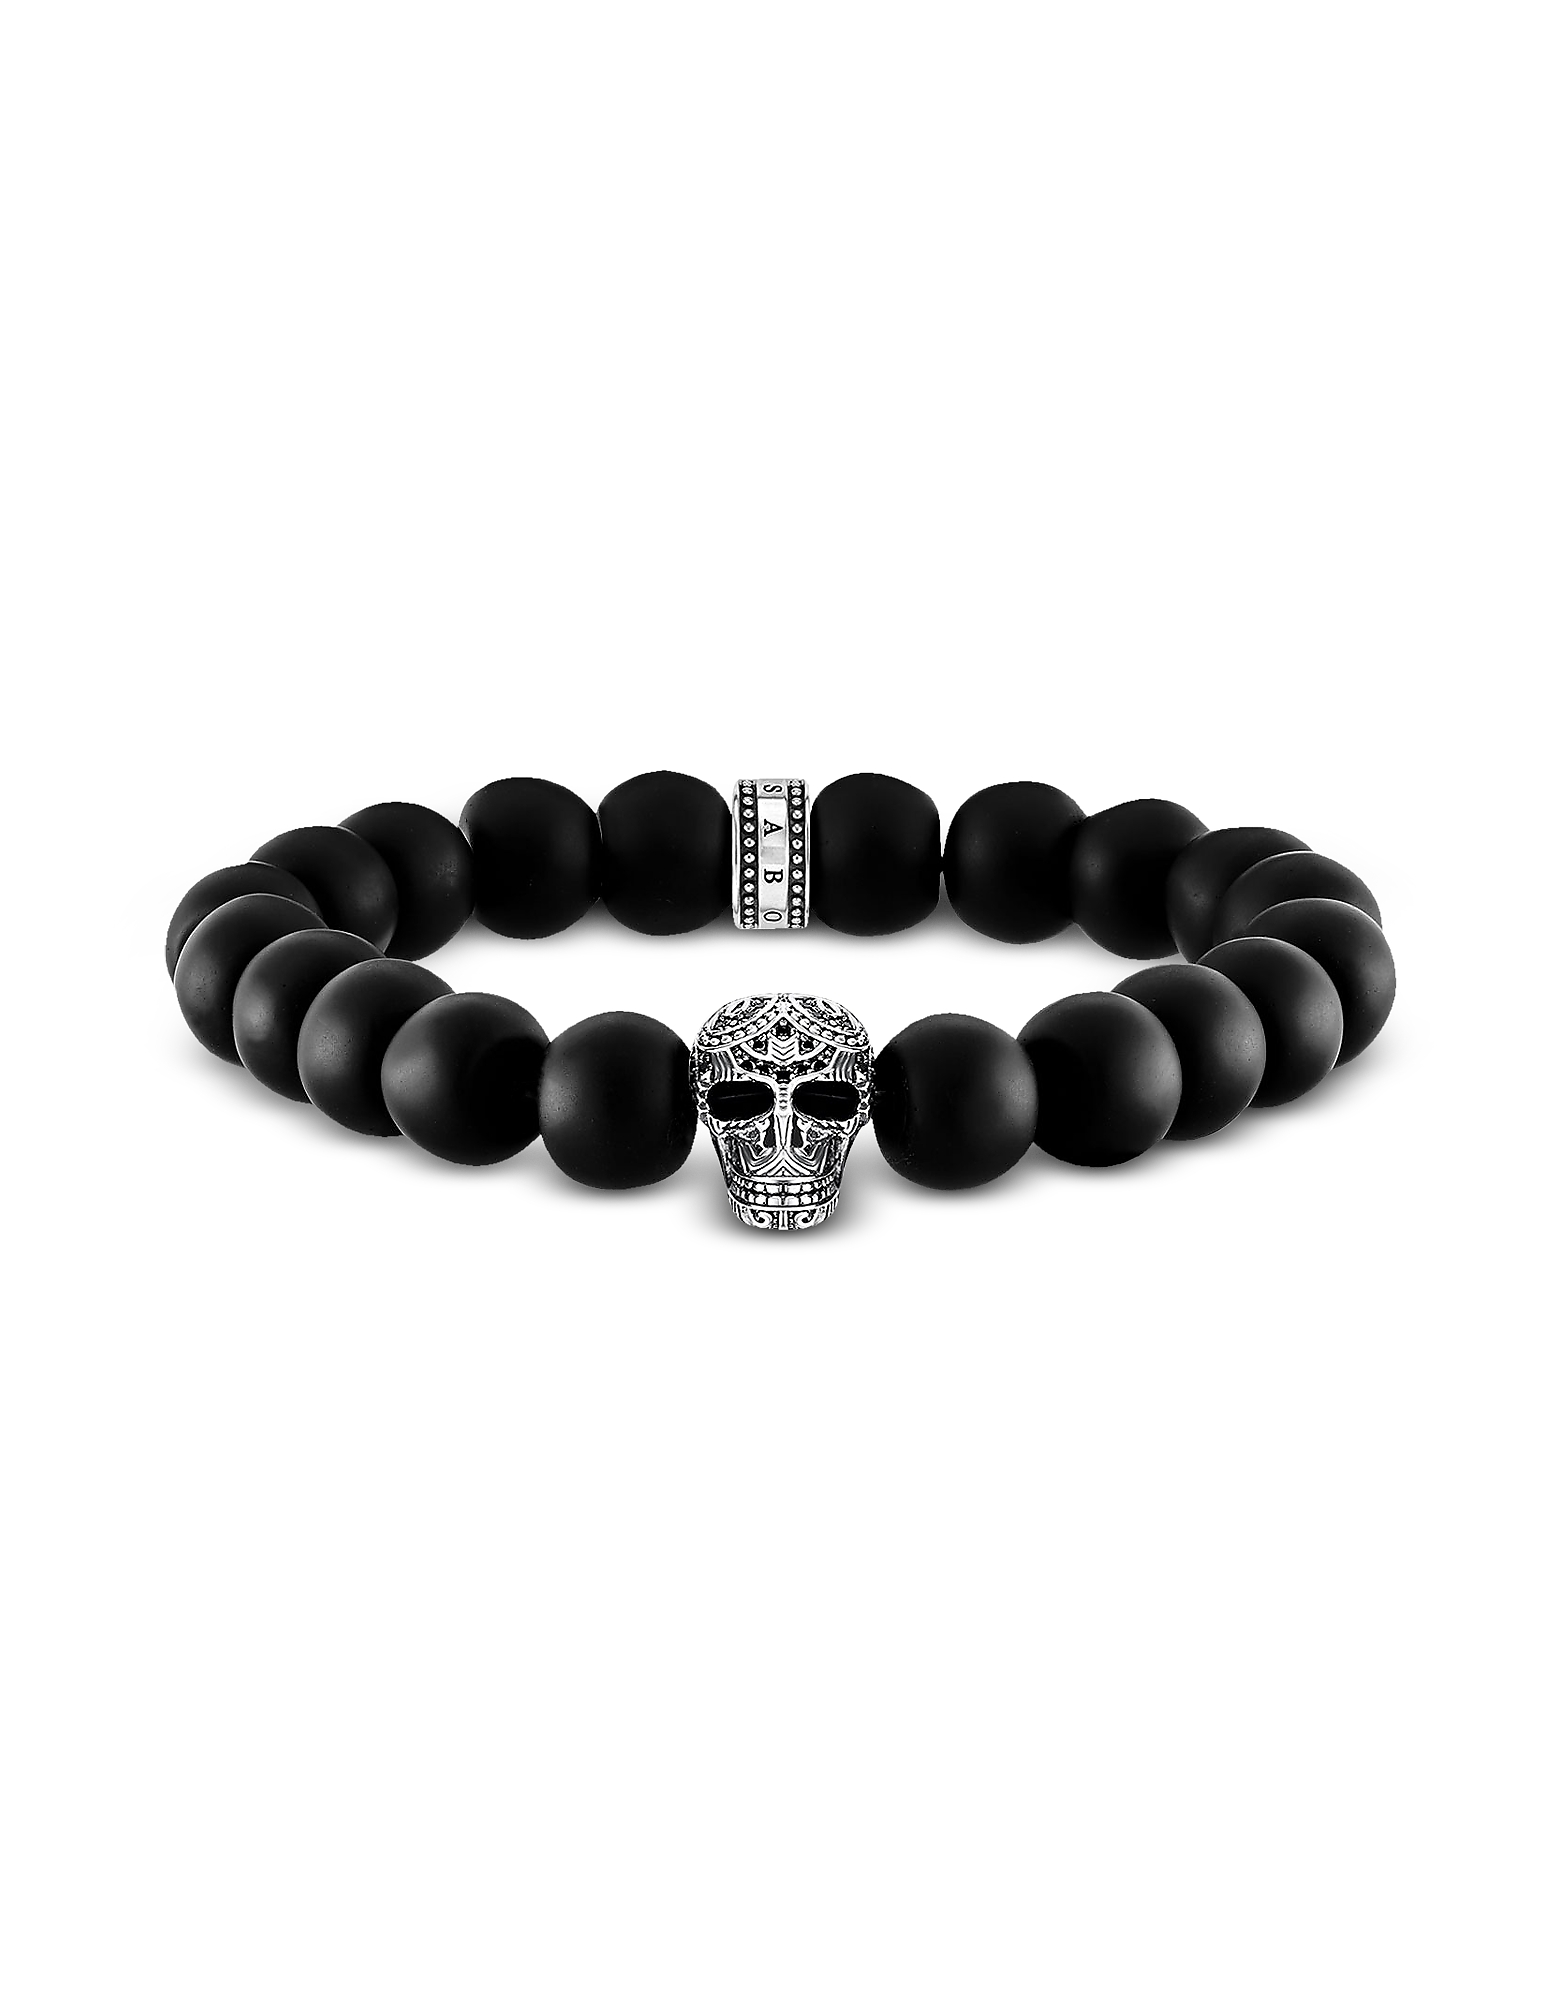 

Blackened 925 Sterling Silver and Matt Obsidian Beads Maori Skull Power Bracelet, Black